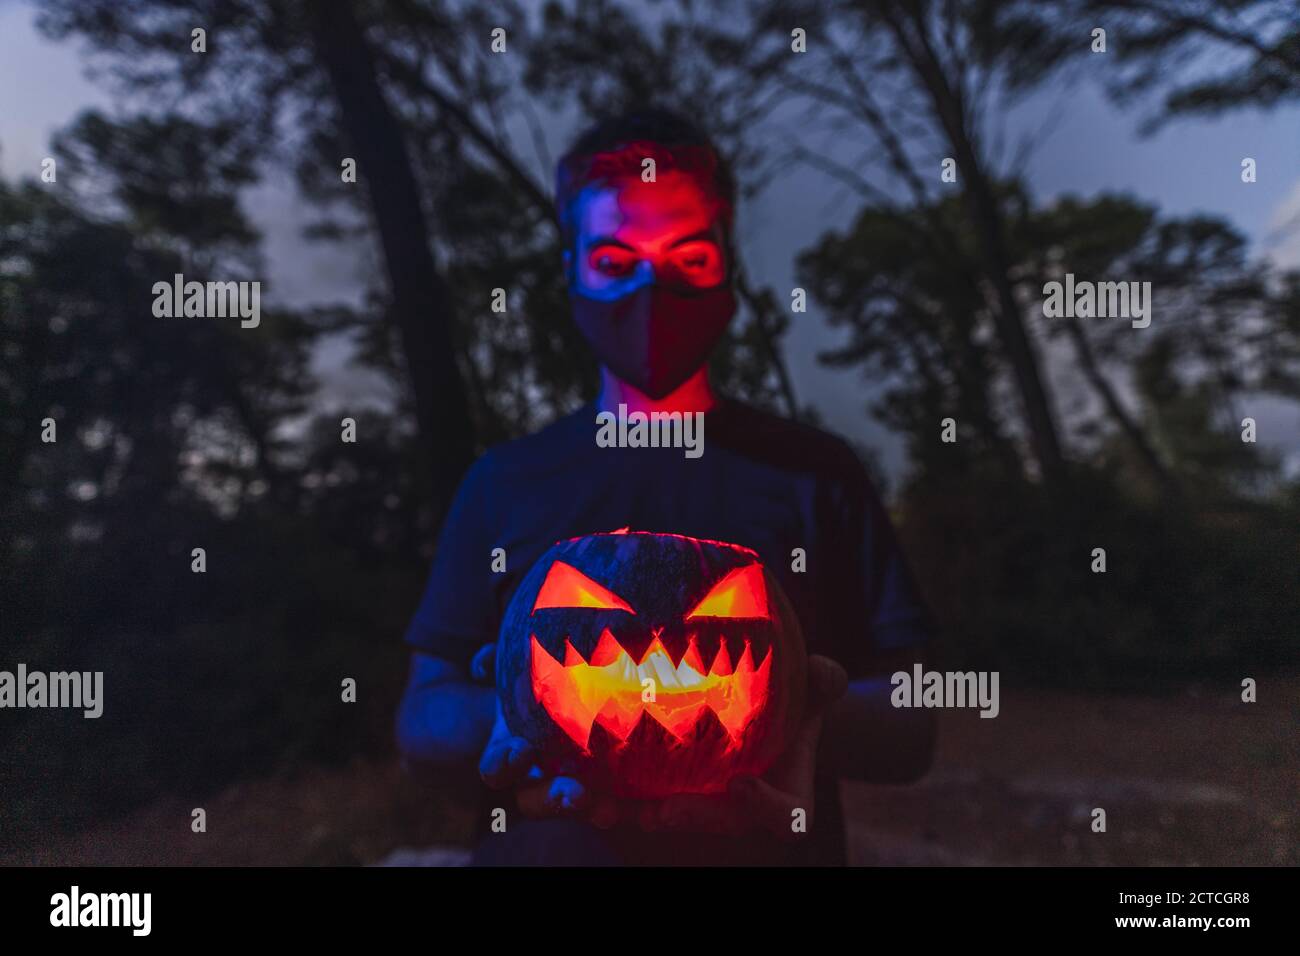 Giovane maschio che indossa una maschera nera e tiene un Halloween zucca con una faccia spaventosa Foto Stock